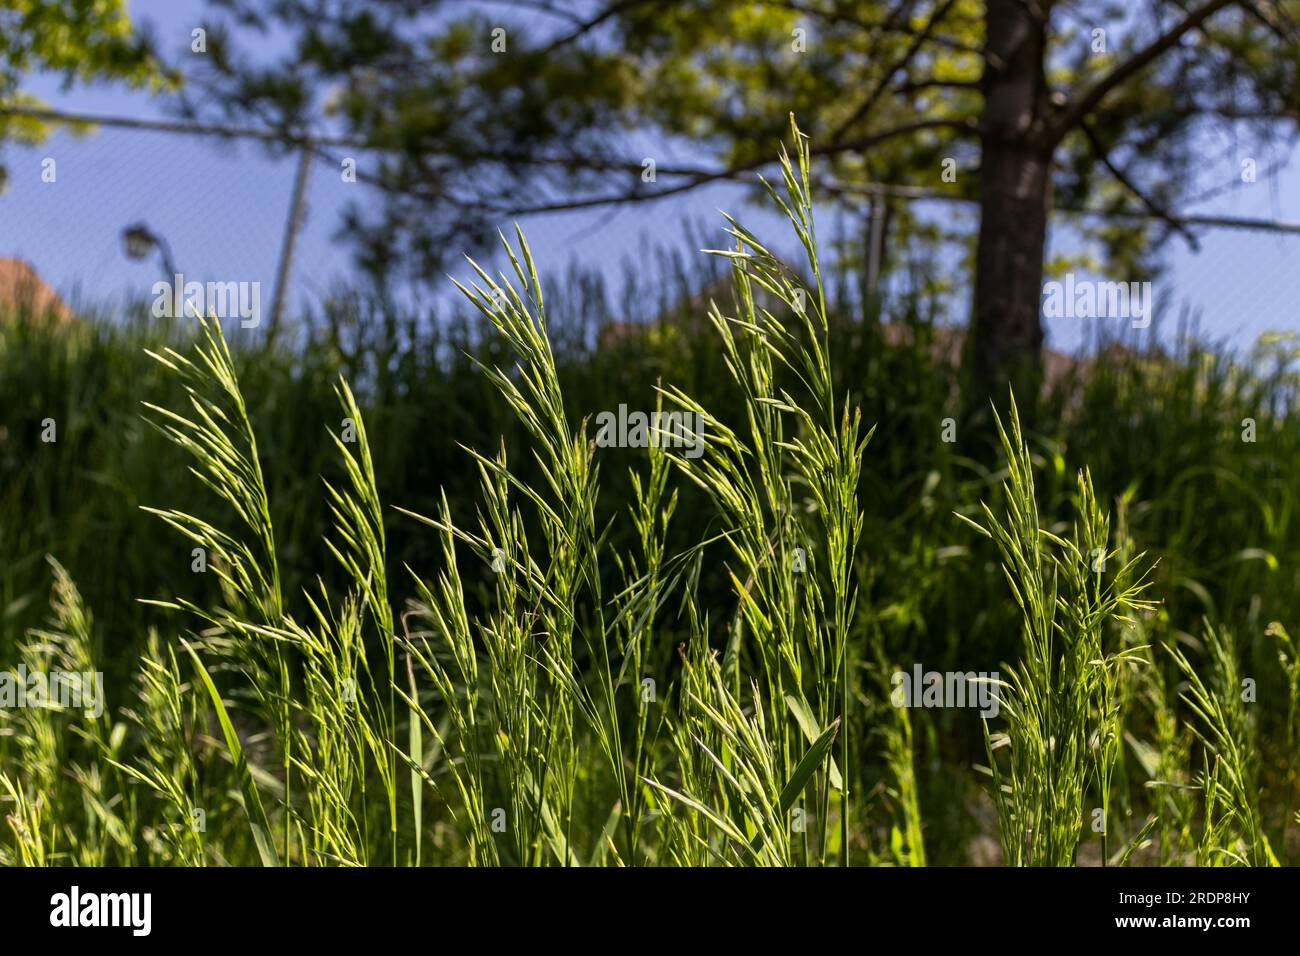 Tall fescue grass (Festuca arundinacea) in a field - blurred dark sky background Stock Photo